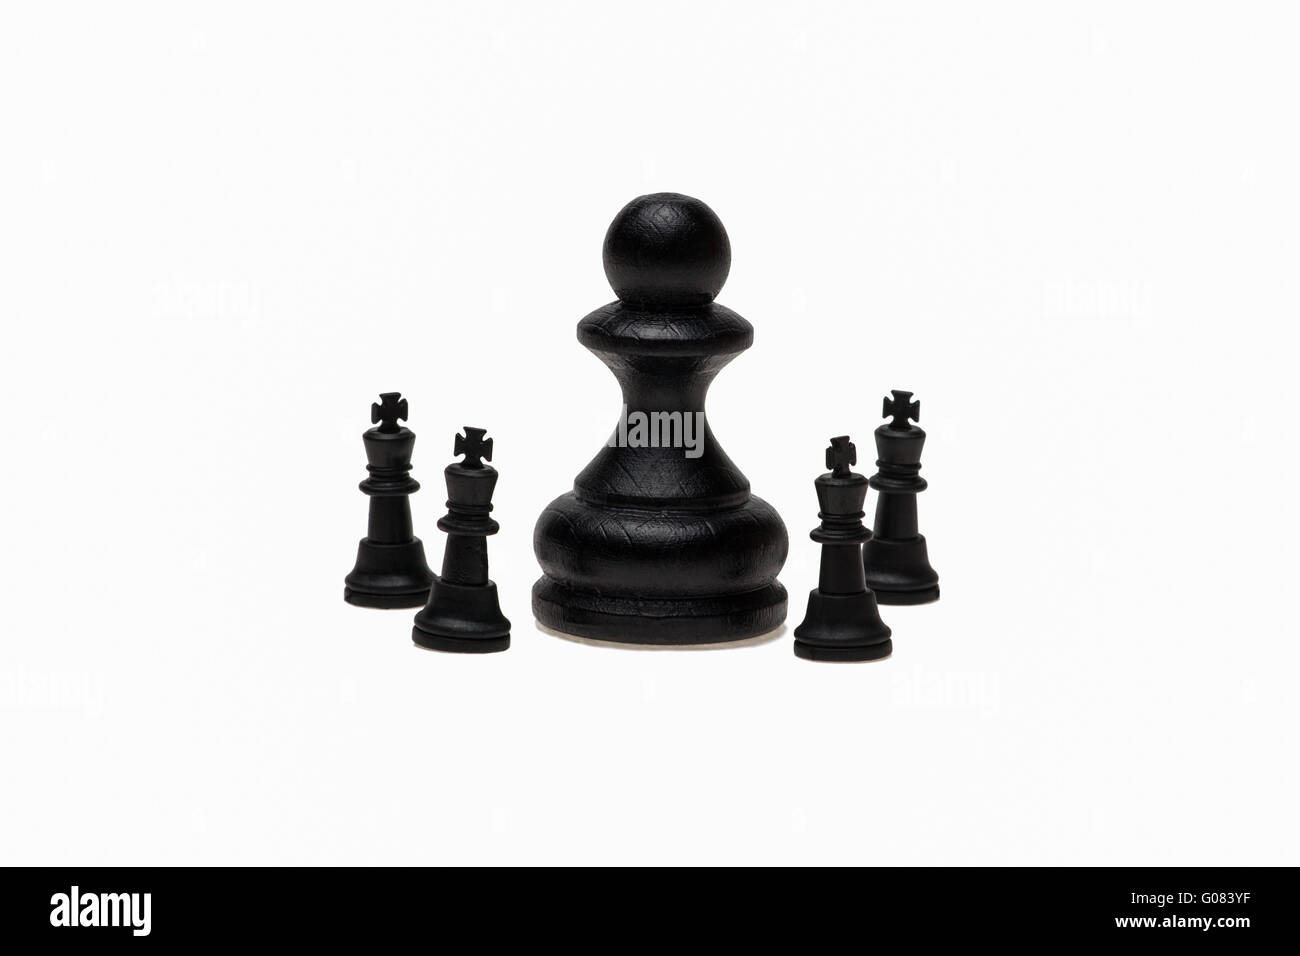 Grande nero pedina surronnded da quattro piccoli scacchi kings isolaged su sfondo bianco Foto Stock